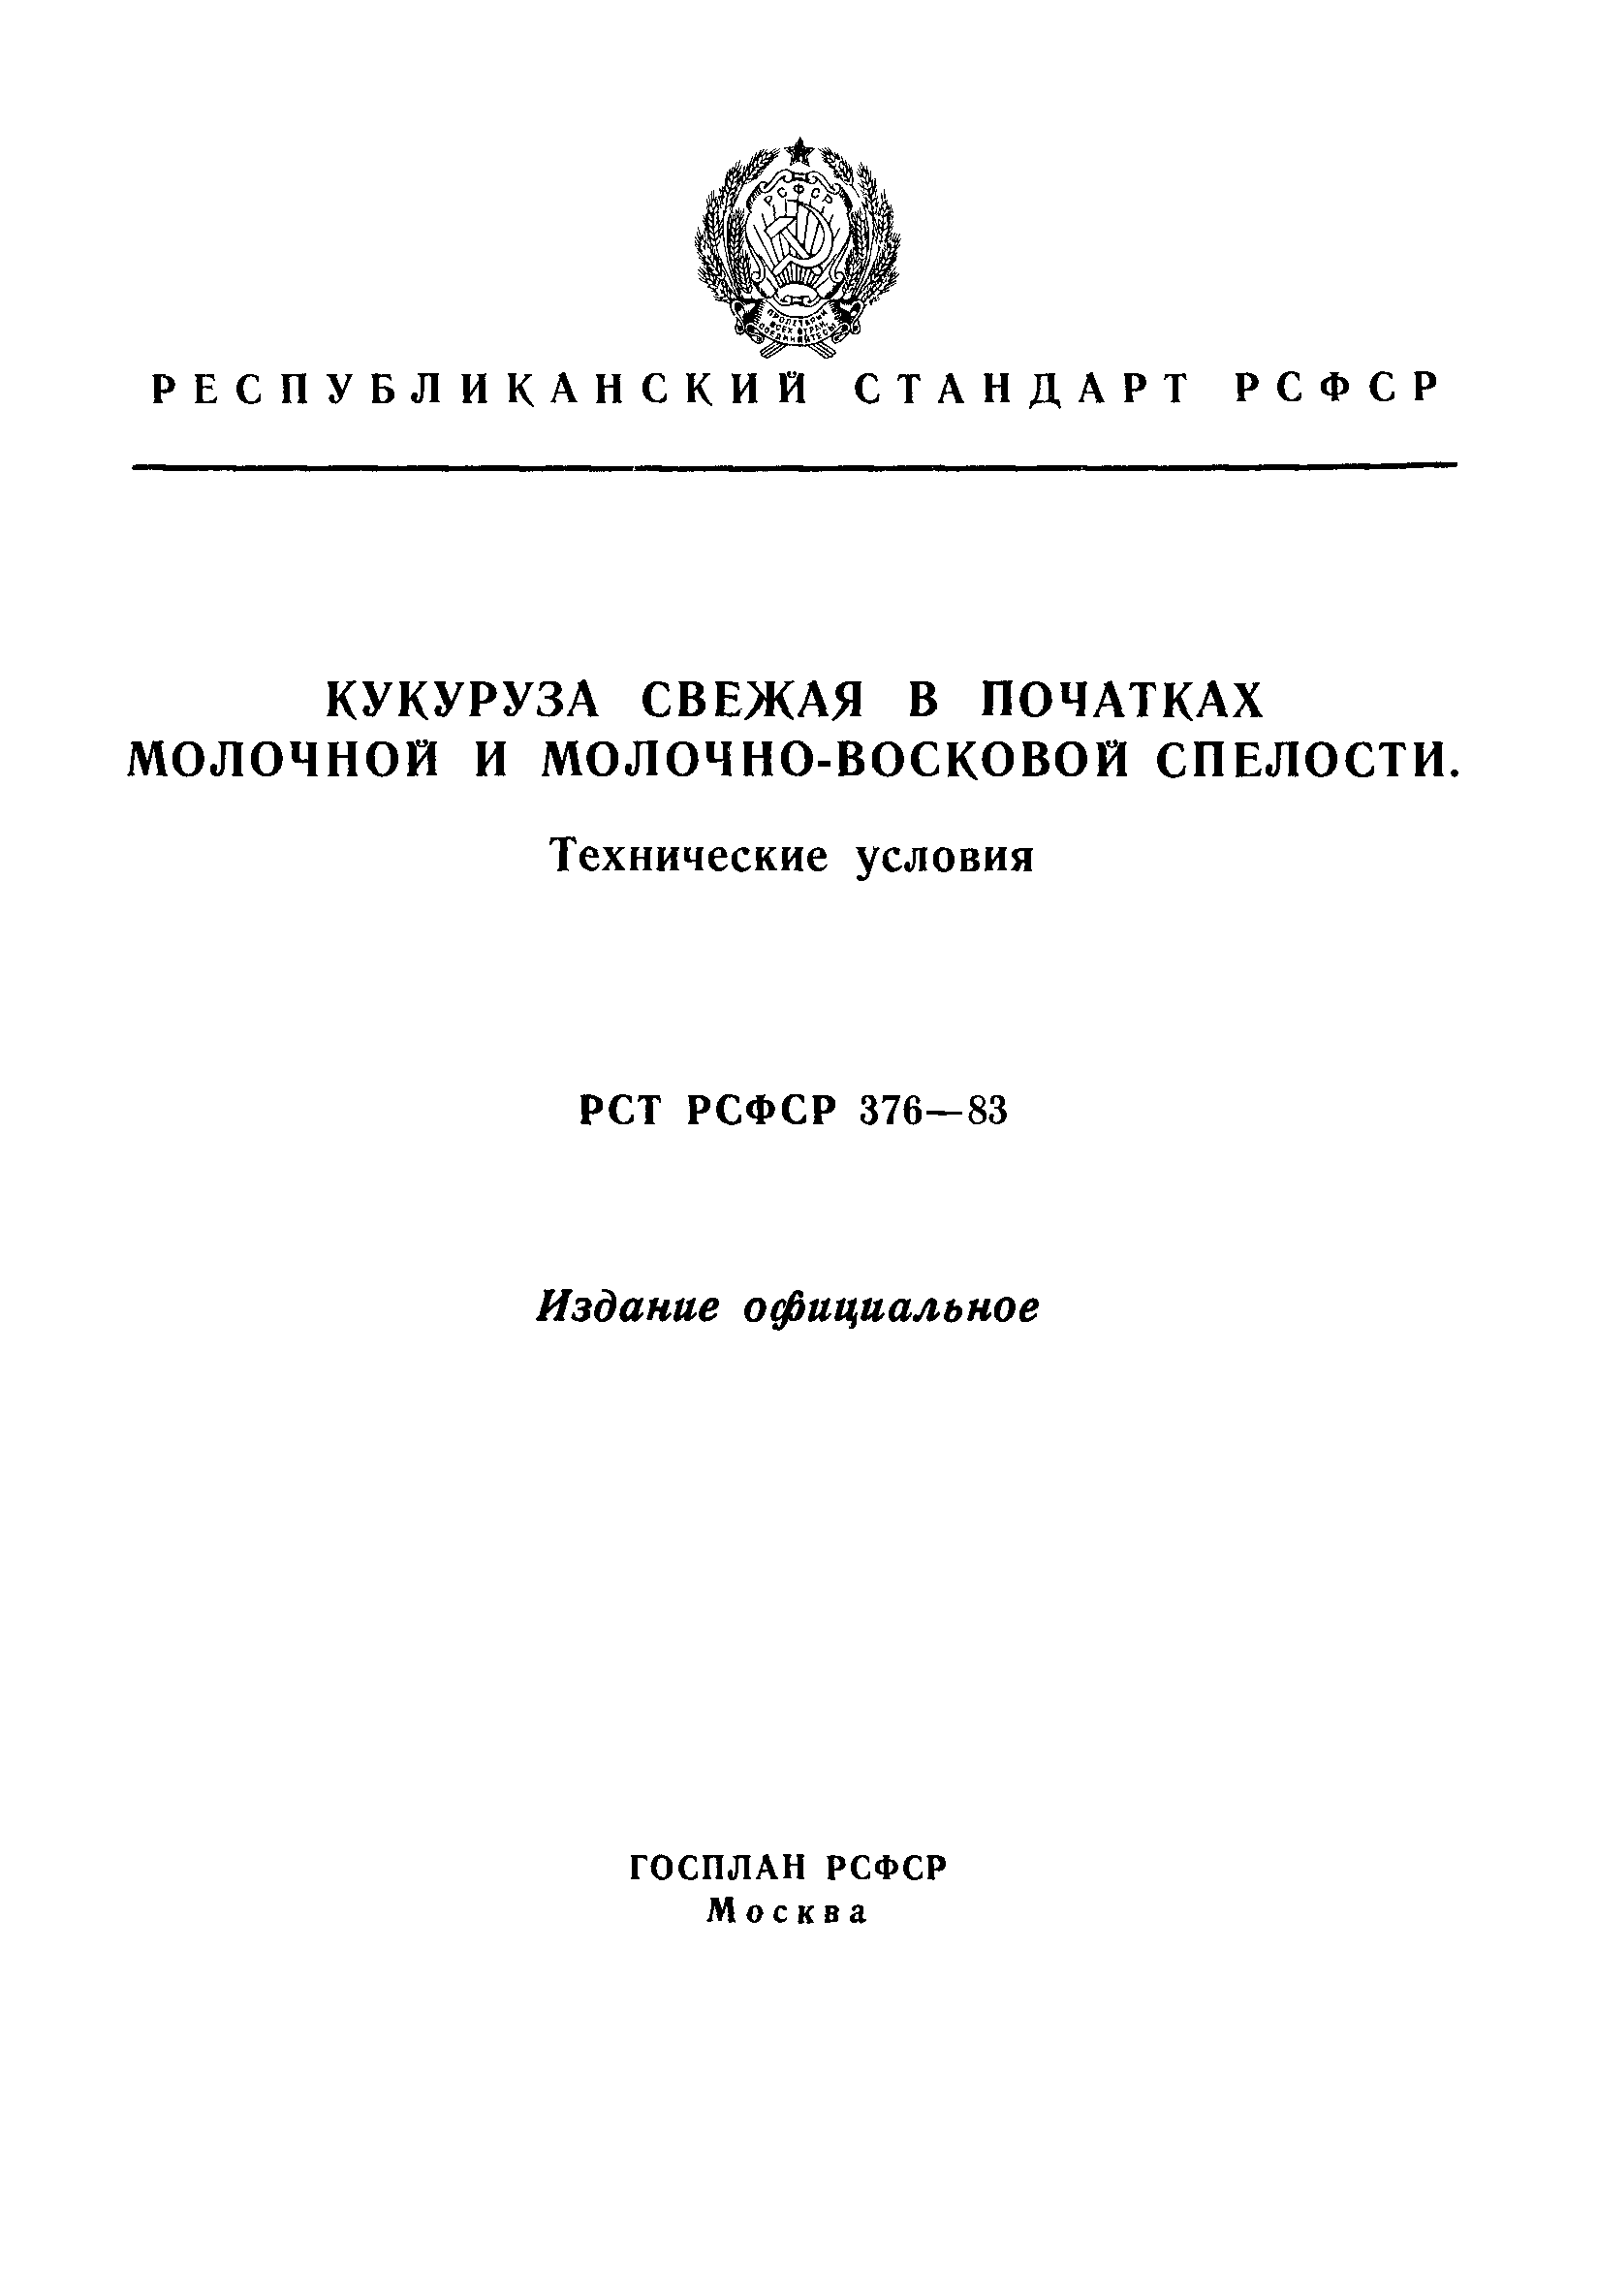 РСТ РСФСР 376-83